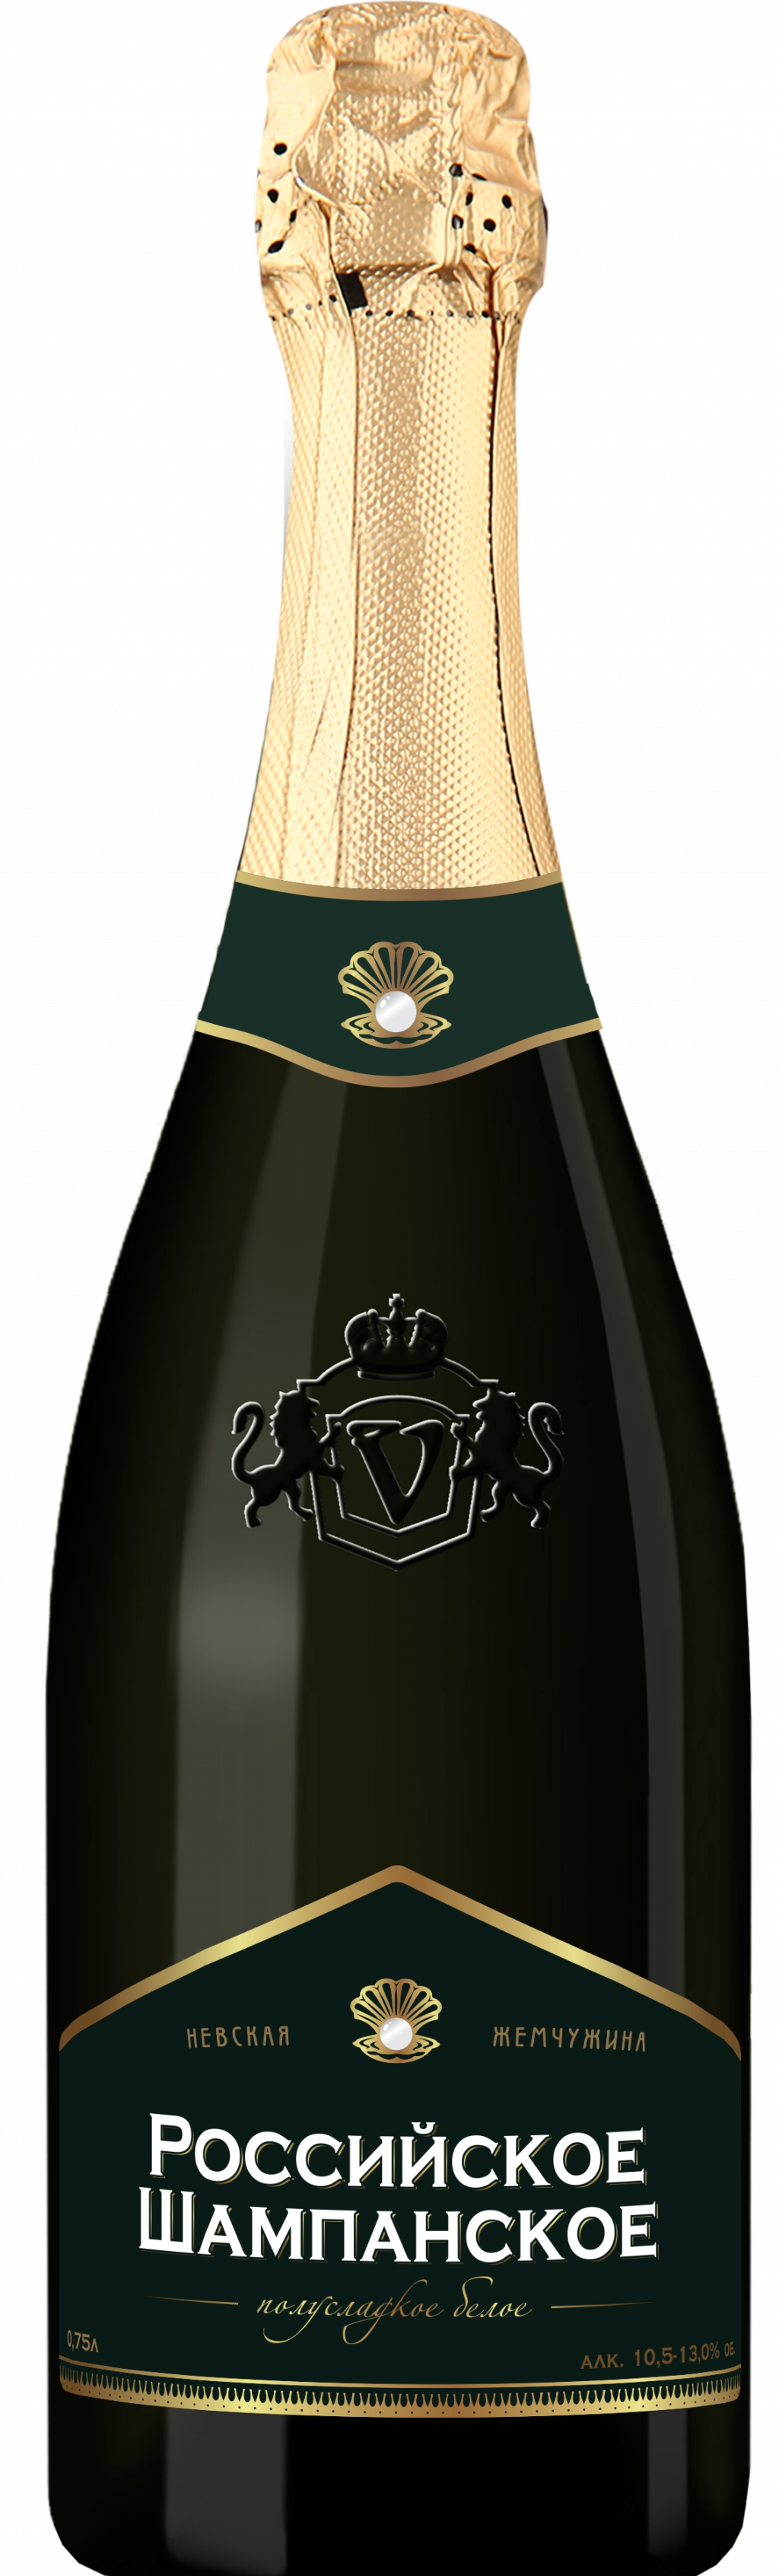 Российское шампанское белое полусладкое "Невская Жемчужина" - Гармоничный, свежий и полный вкус.